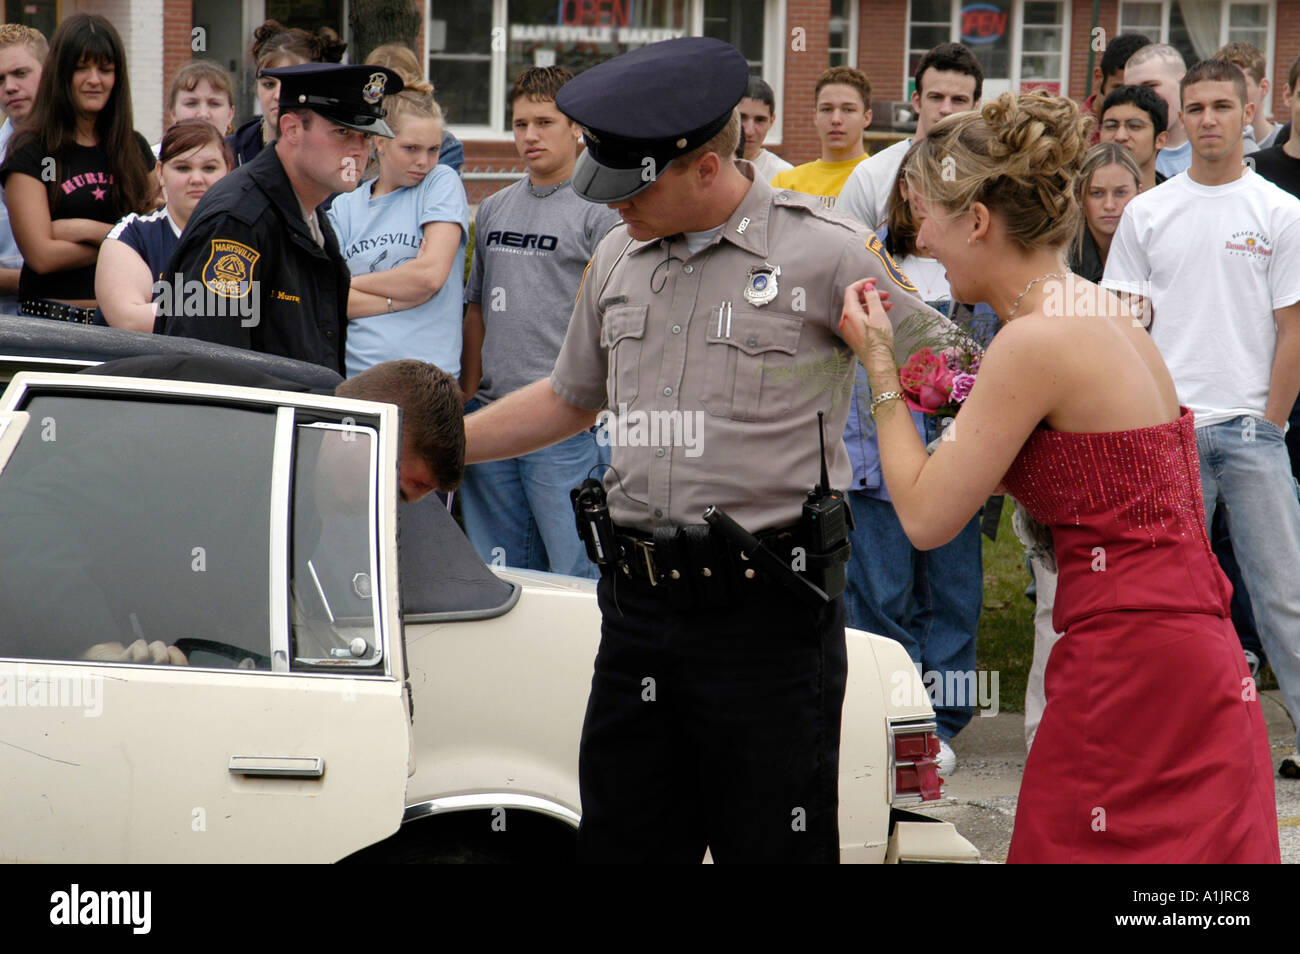 Prom Drunk Driving Demo policier aide les passagers à l'arrière de la voiture tandis que les filles en détresse cherche sur les adolescents Banque D'Images